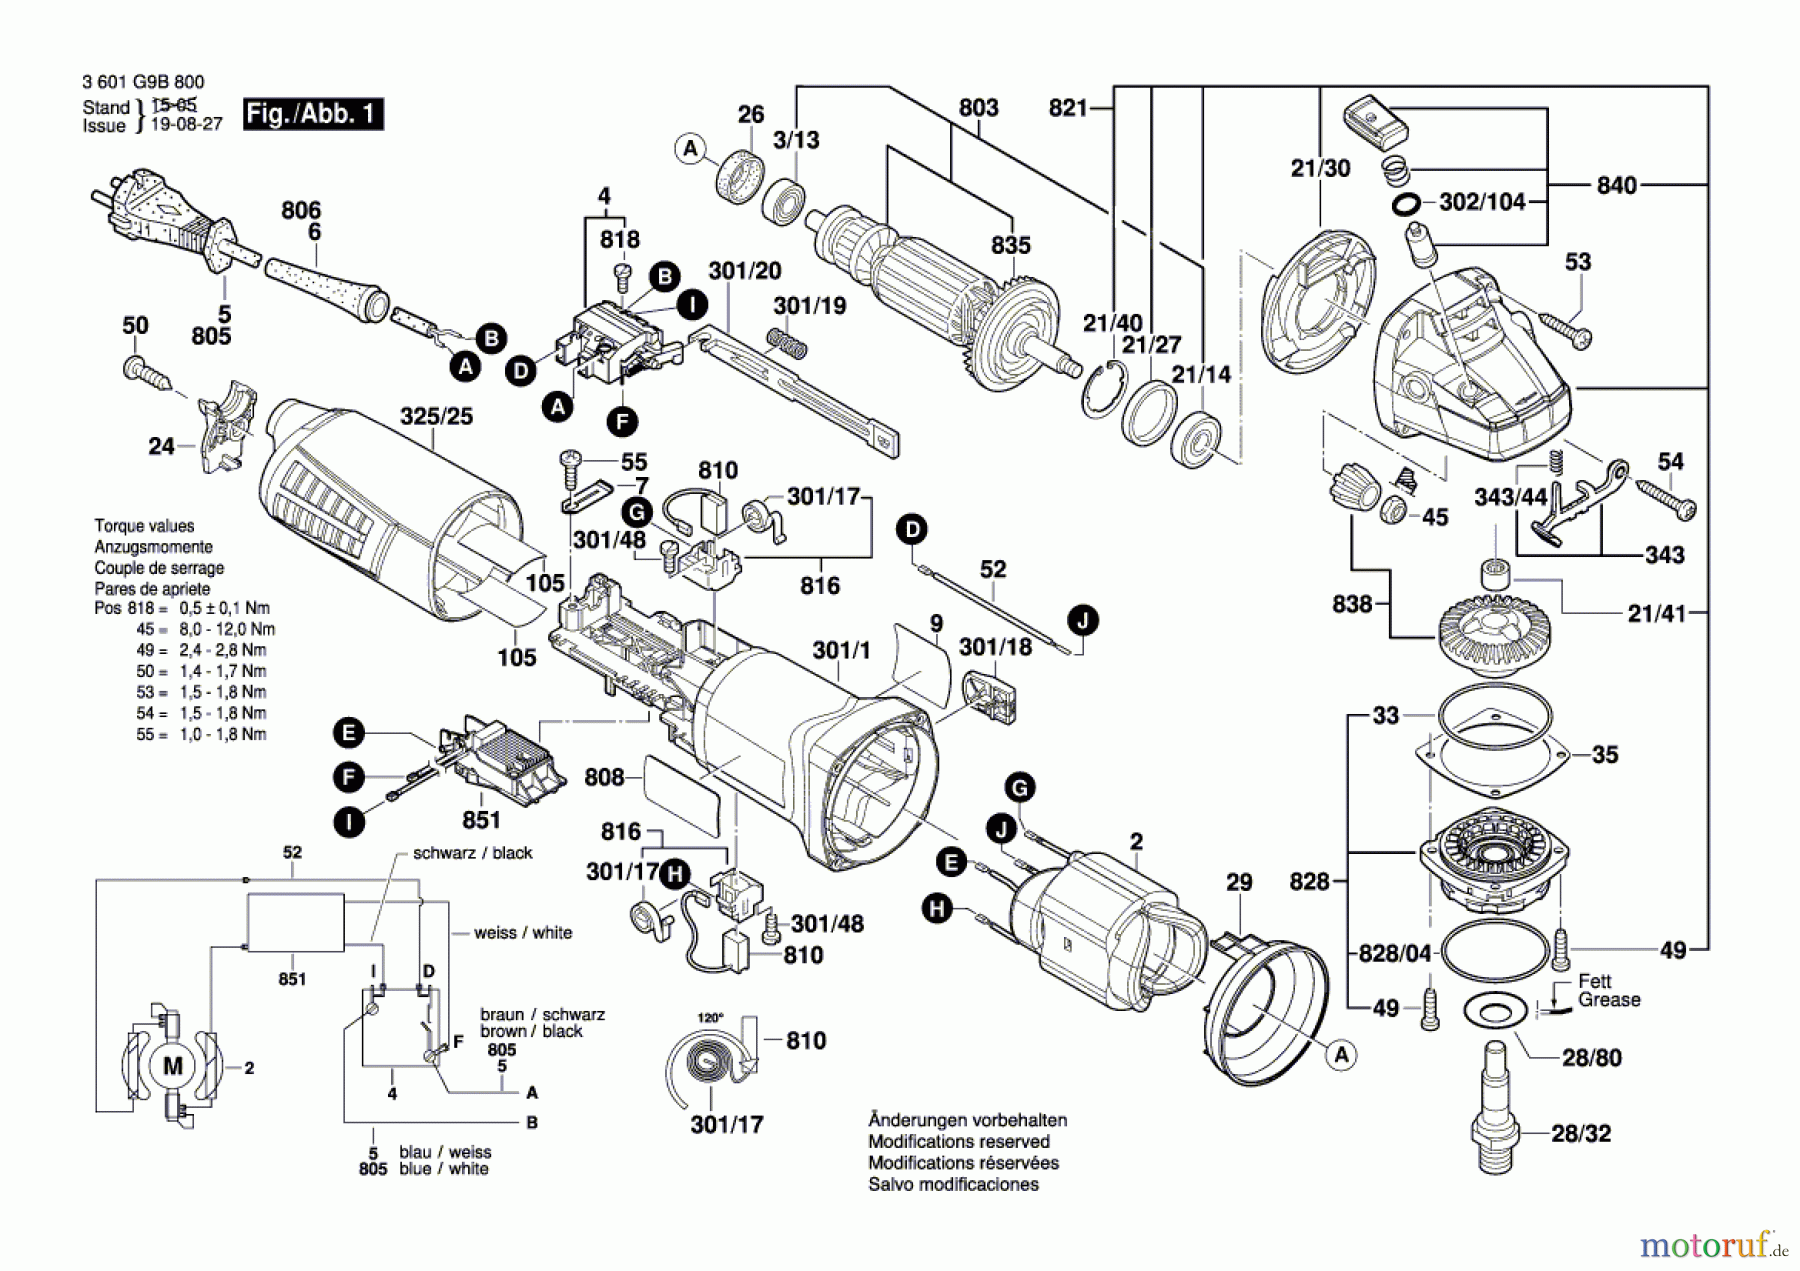  Bosch Werkzeug Winkelschleifer WKS 9-115 Seite 1